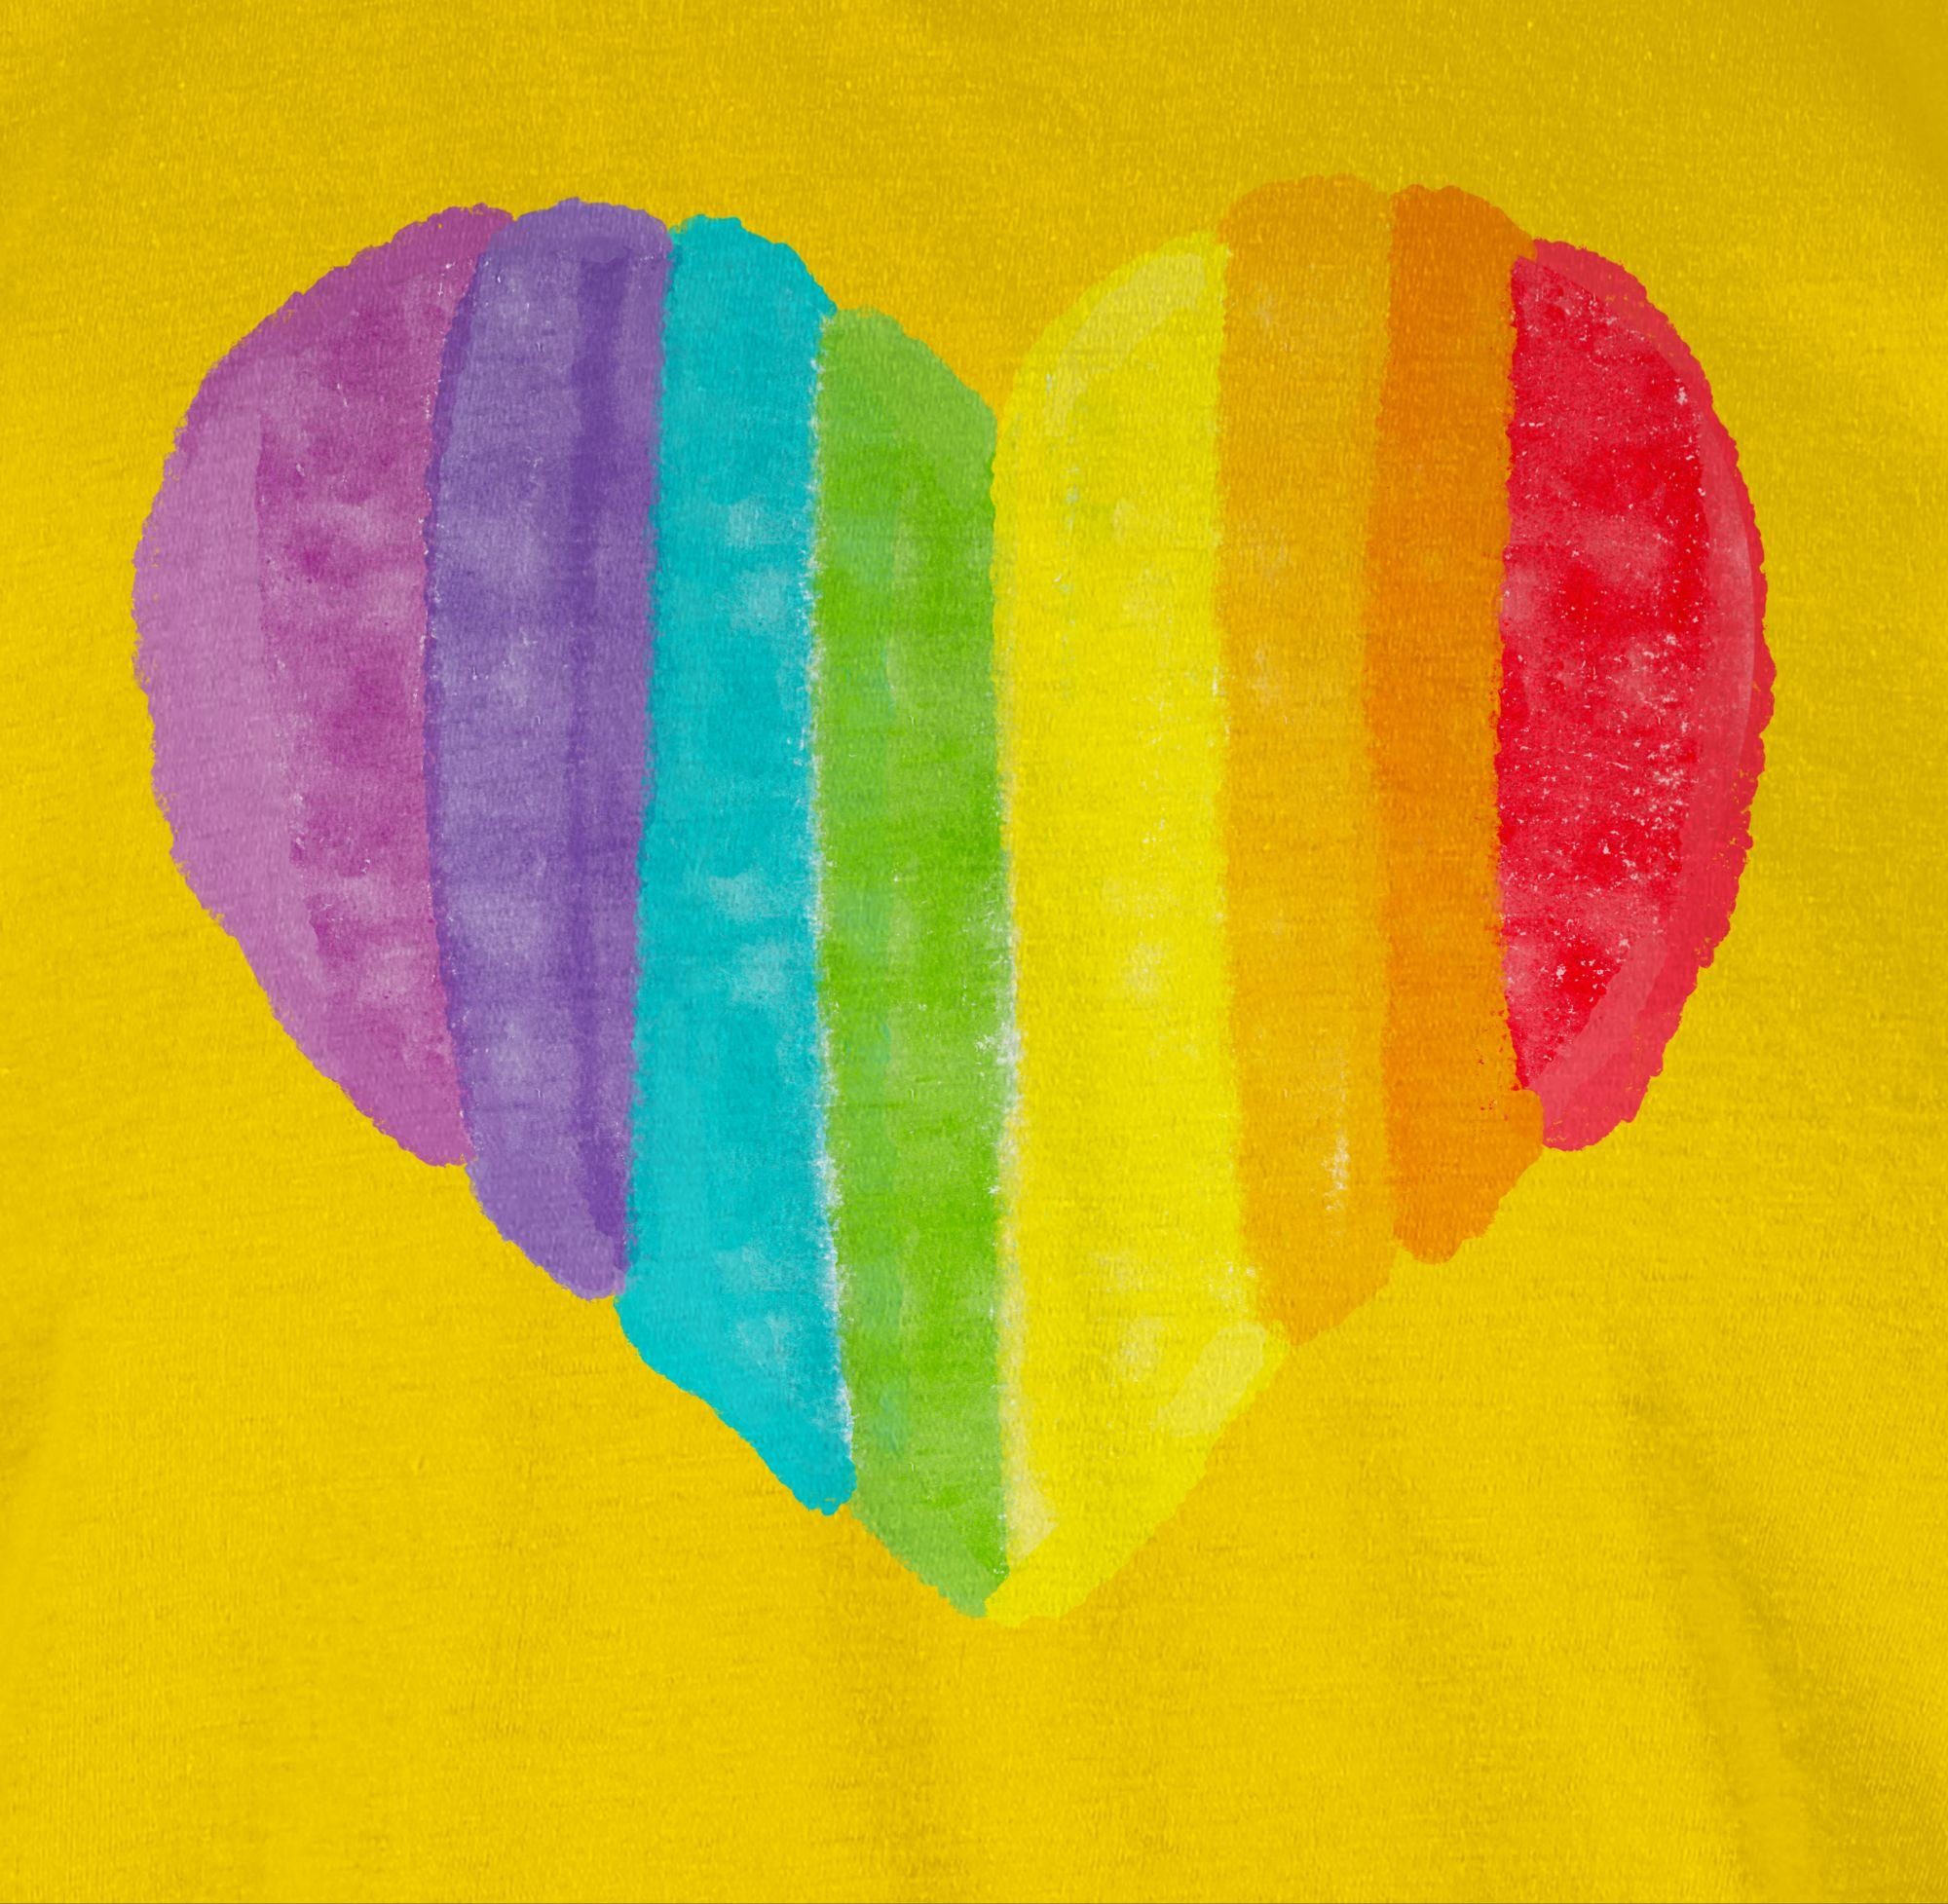 Shirtracer LGBT 03 Kleidung Regenbogen T-Shirt Gelb Herz